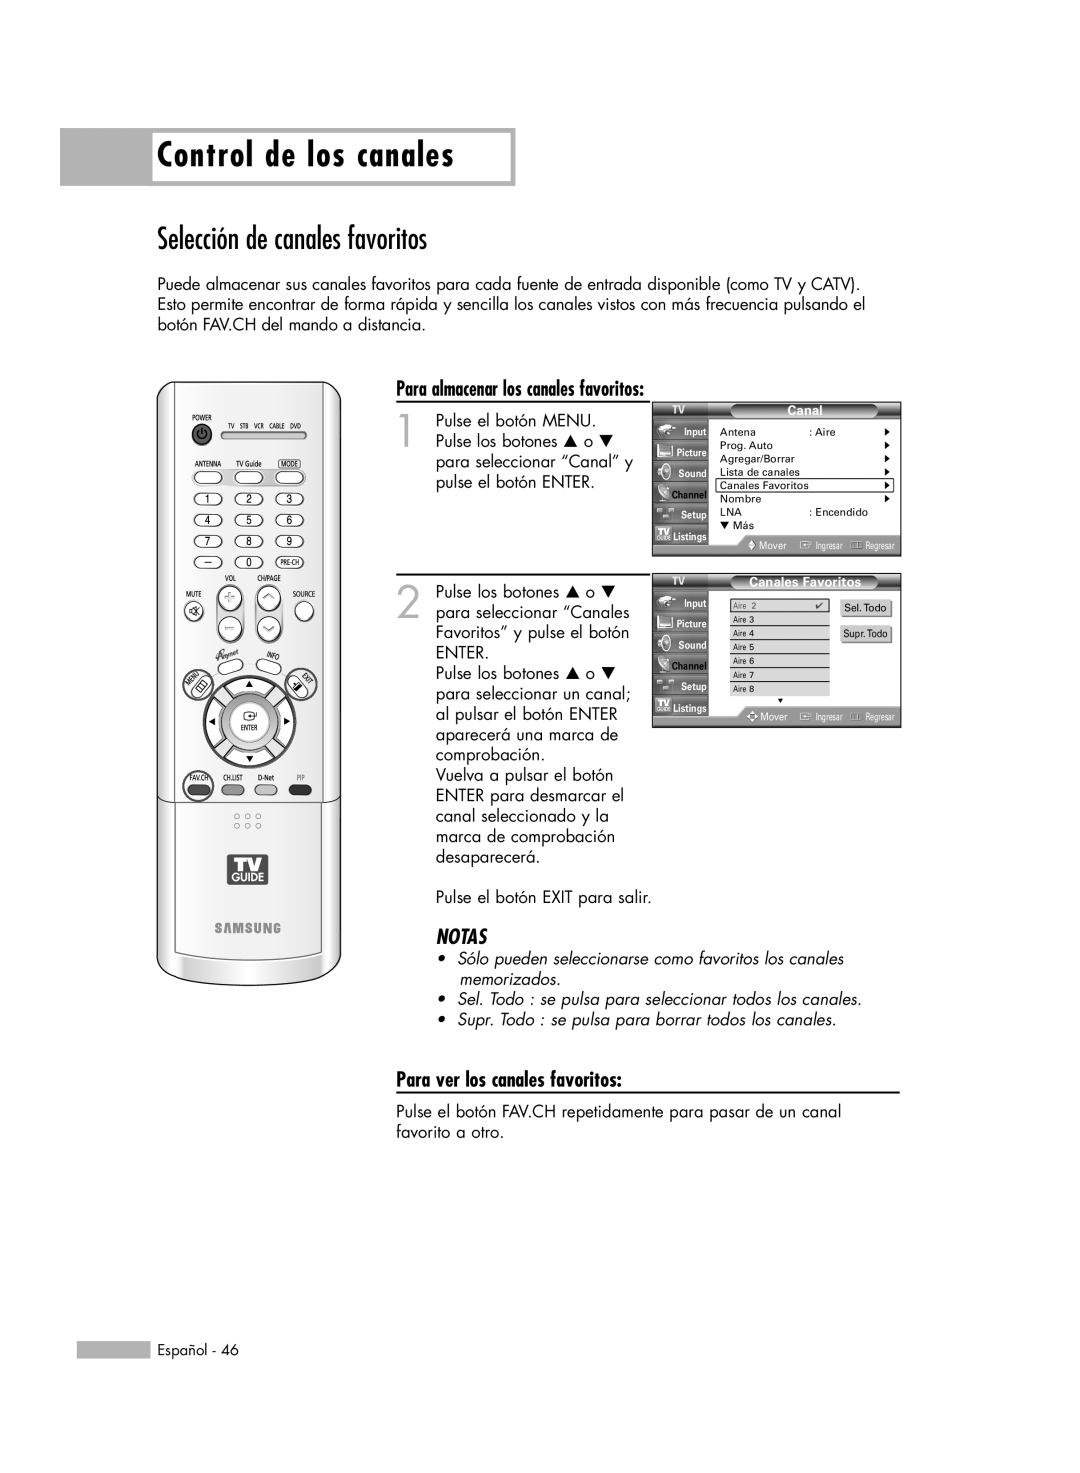 Samsung HL-R5678W Control de los canales, Selección de canales favoritos, Para almacenar los canales favoritos, Notas 